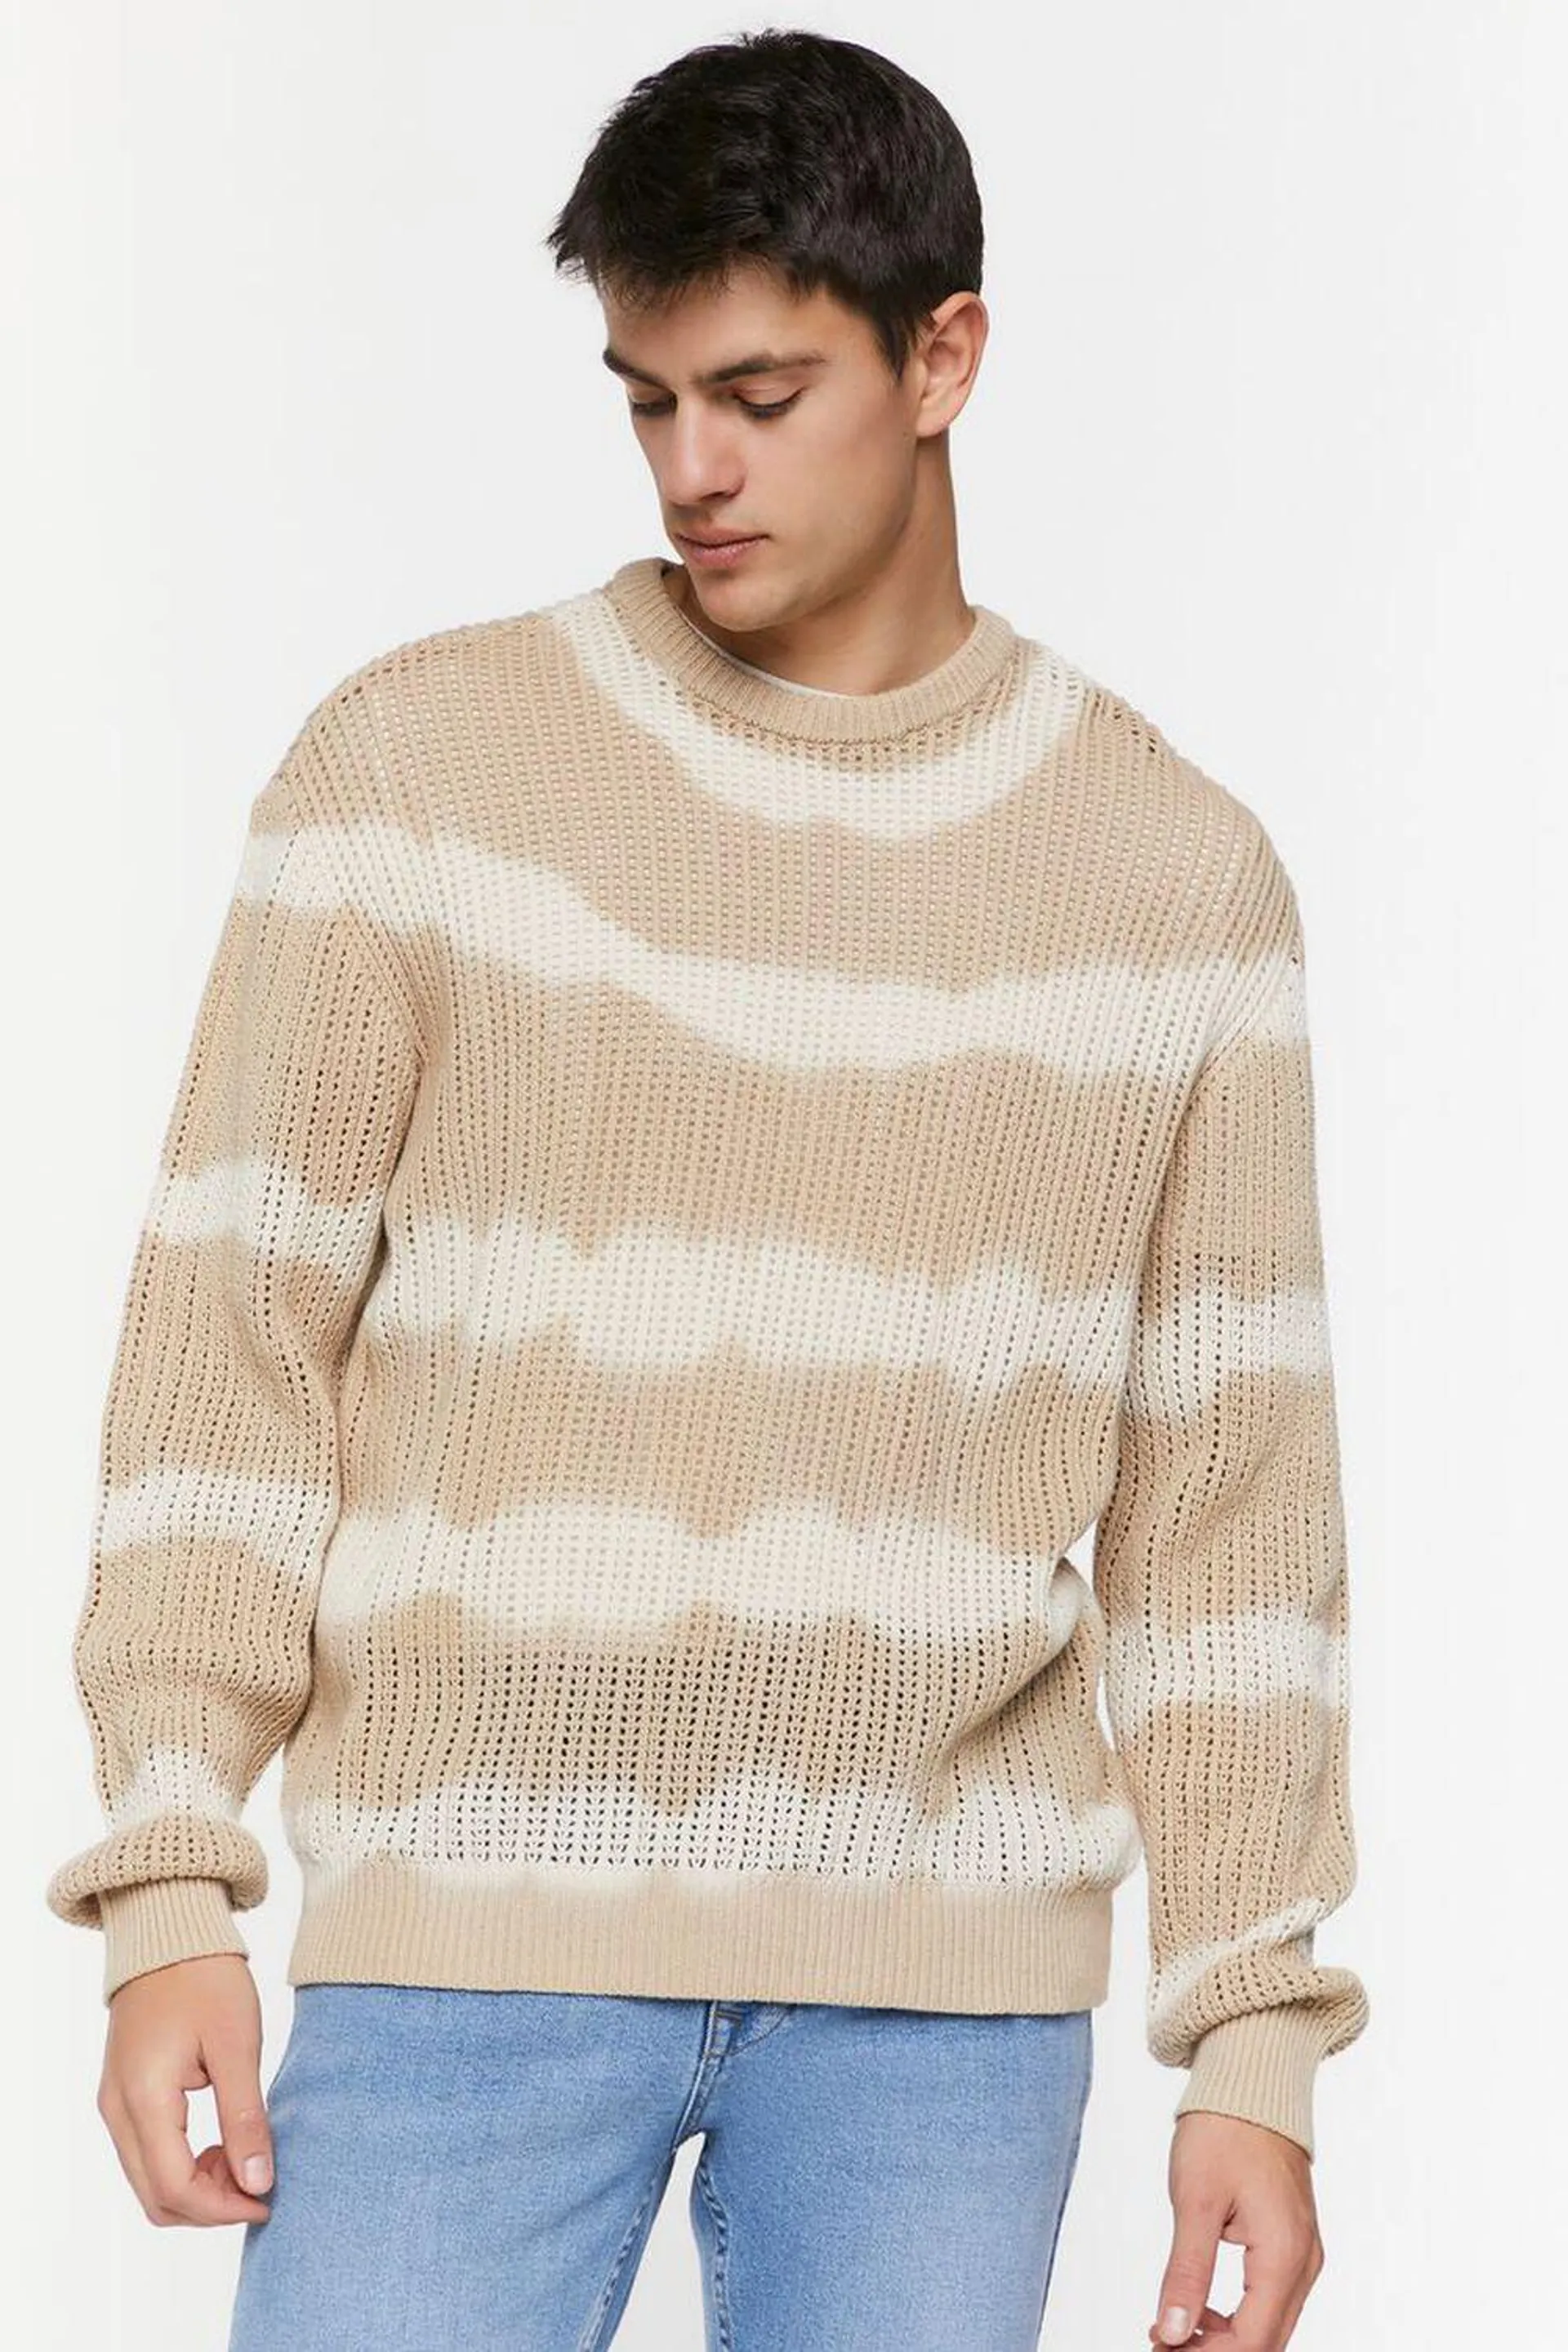 Tie-Dye Striped Sweater